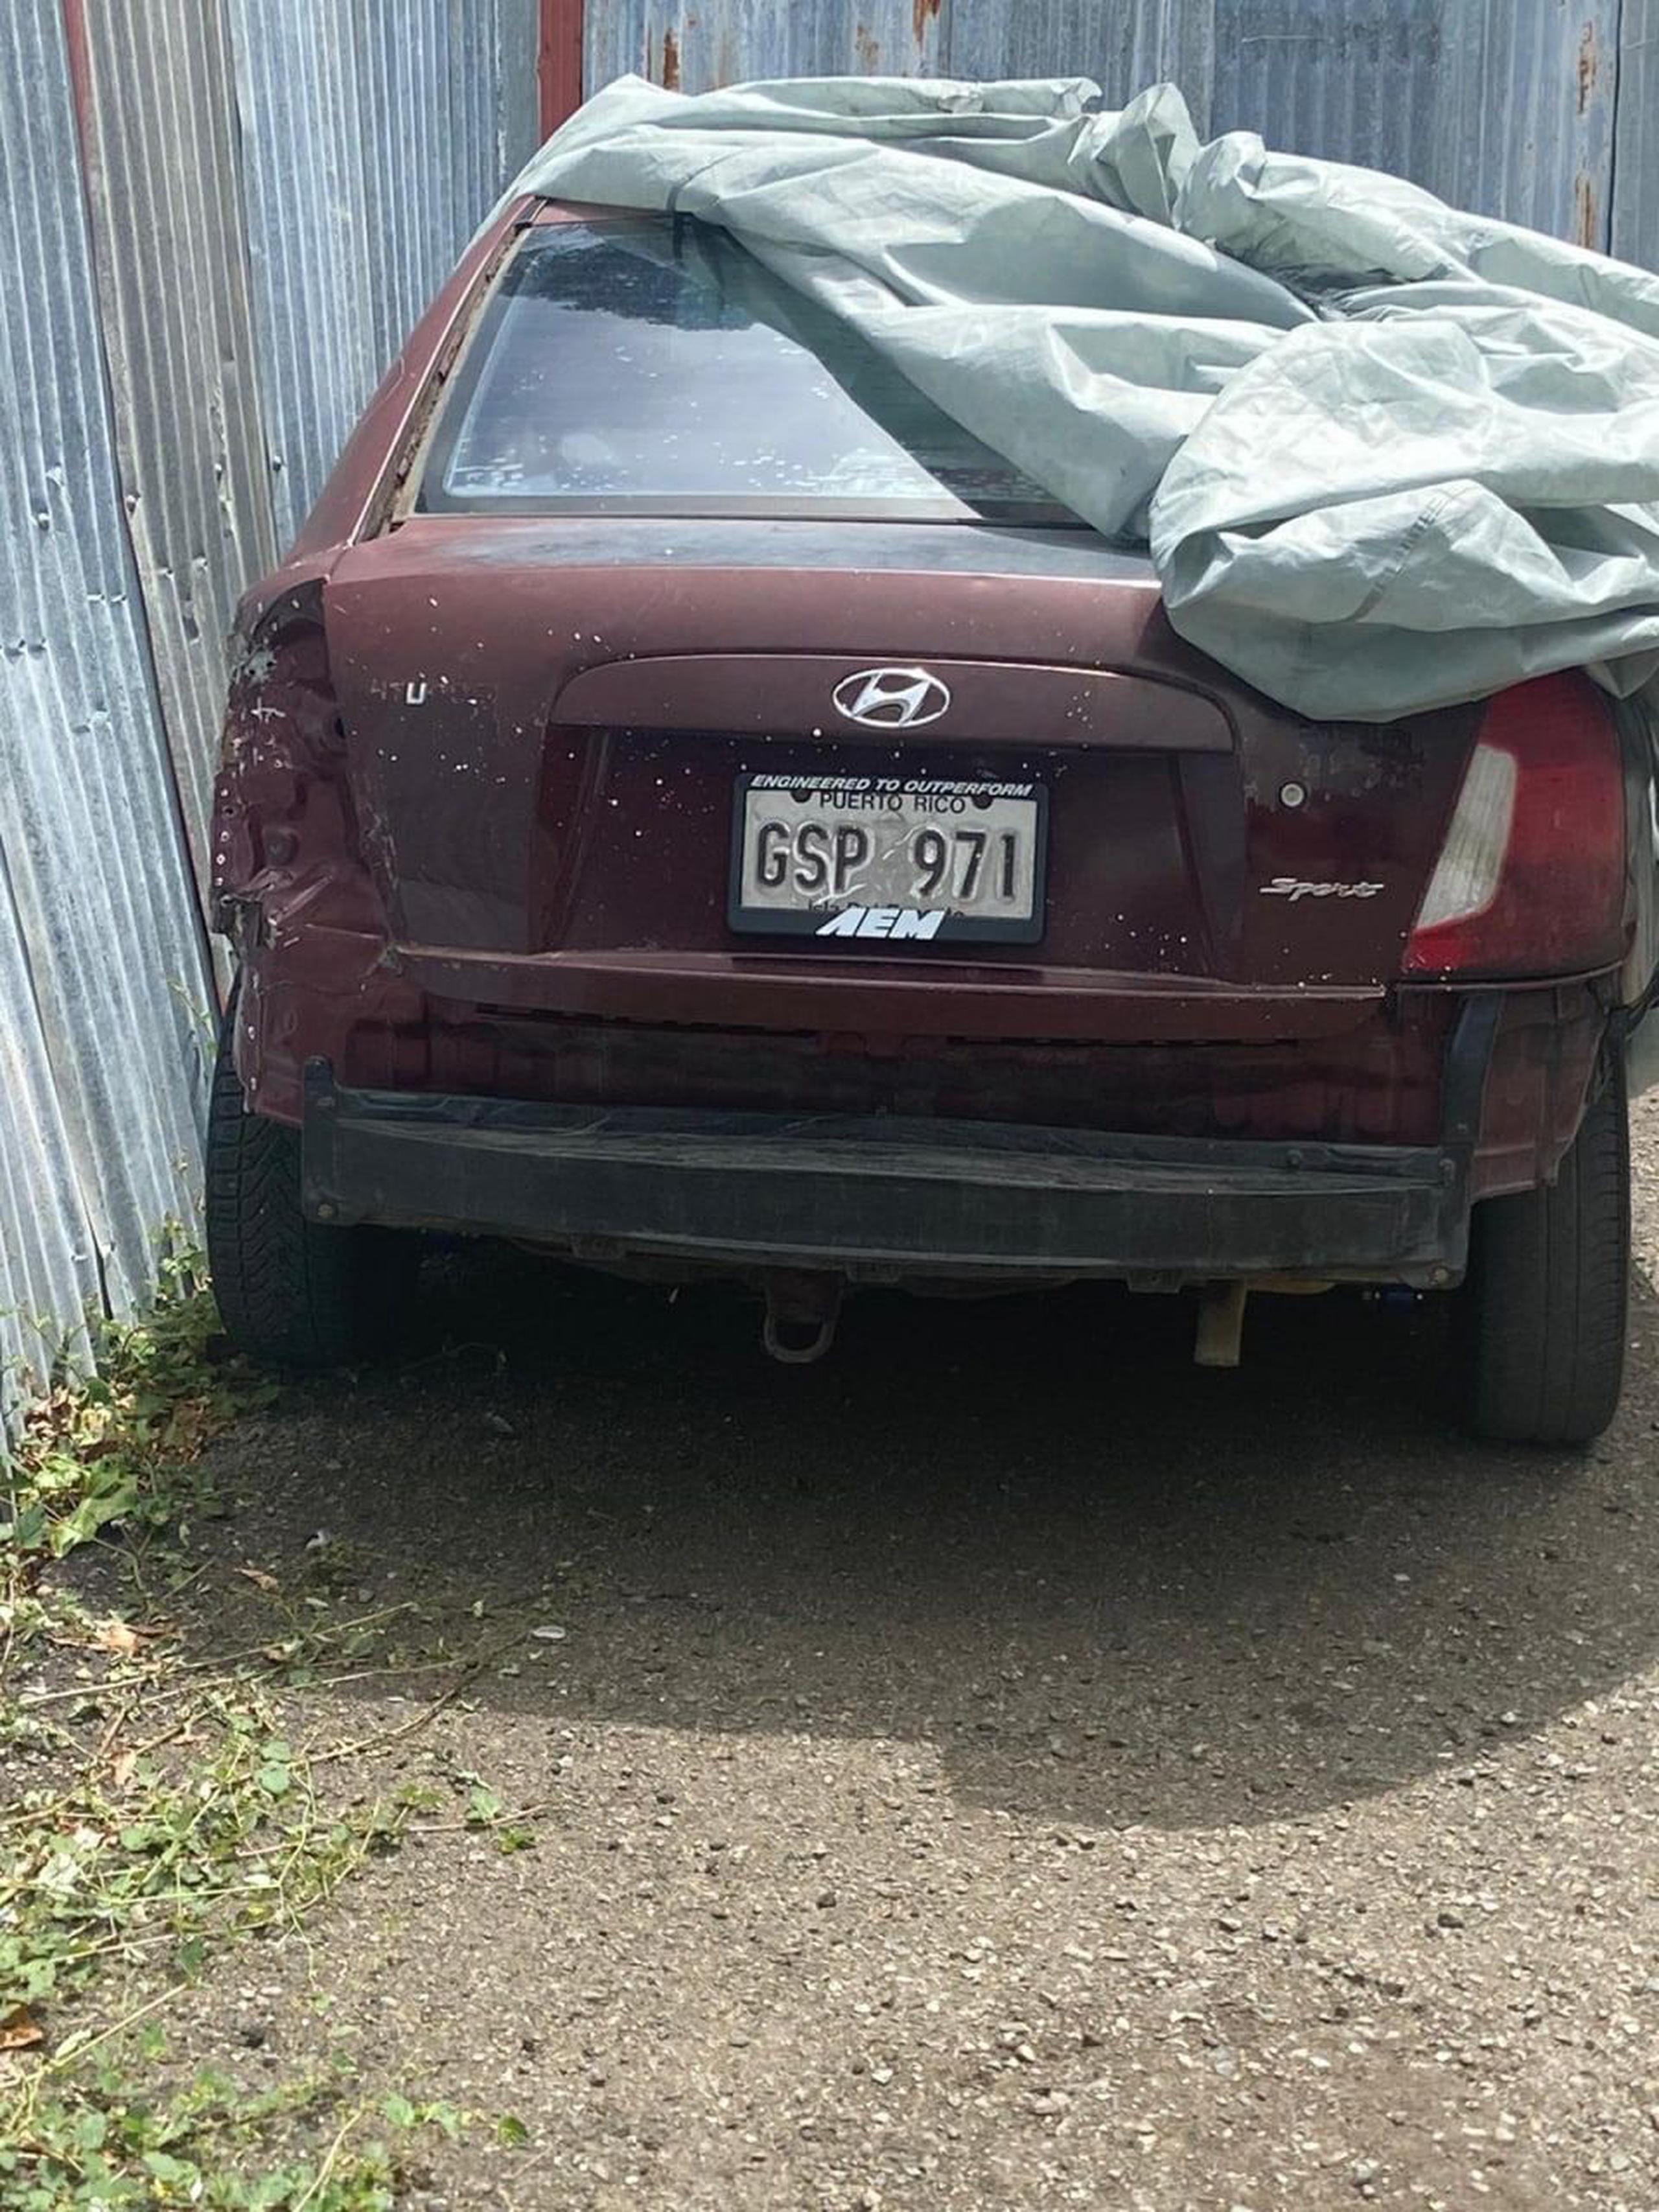 El vehículo Hyundai Accent, del 2007, color vino, en el que viajaba el sospechoso del crimen del agente Erasmo García Torres, fue ocupado a pesar de que intentó ocultarlo con un toldo.